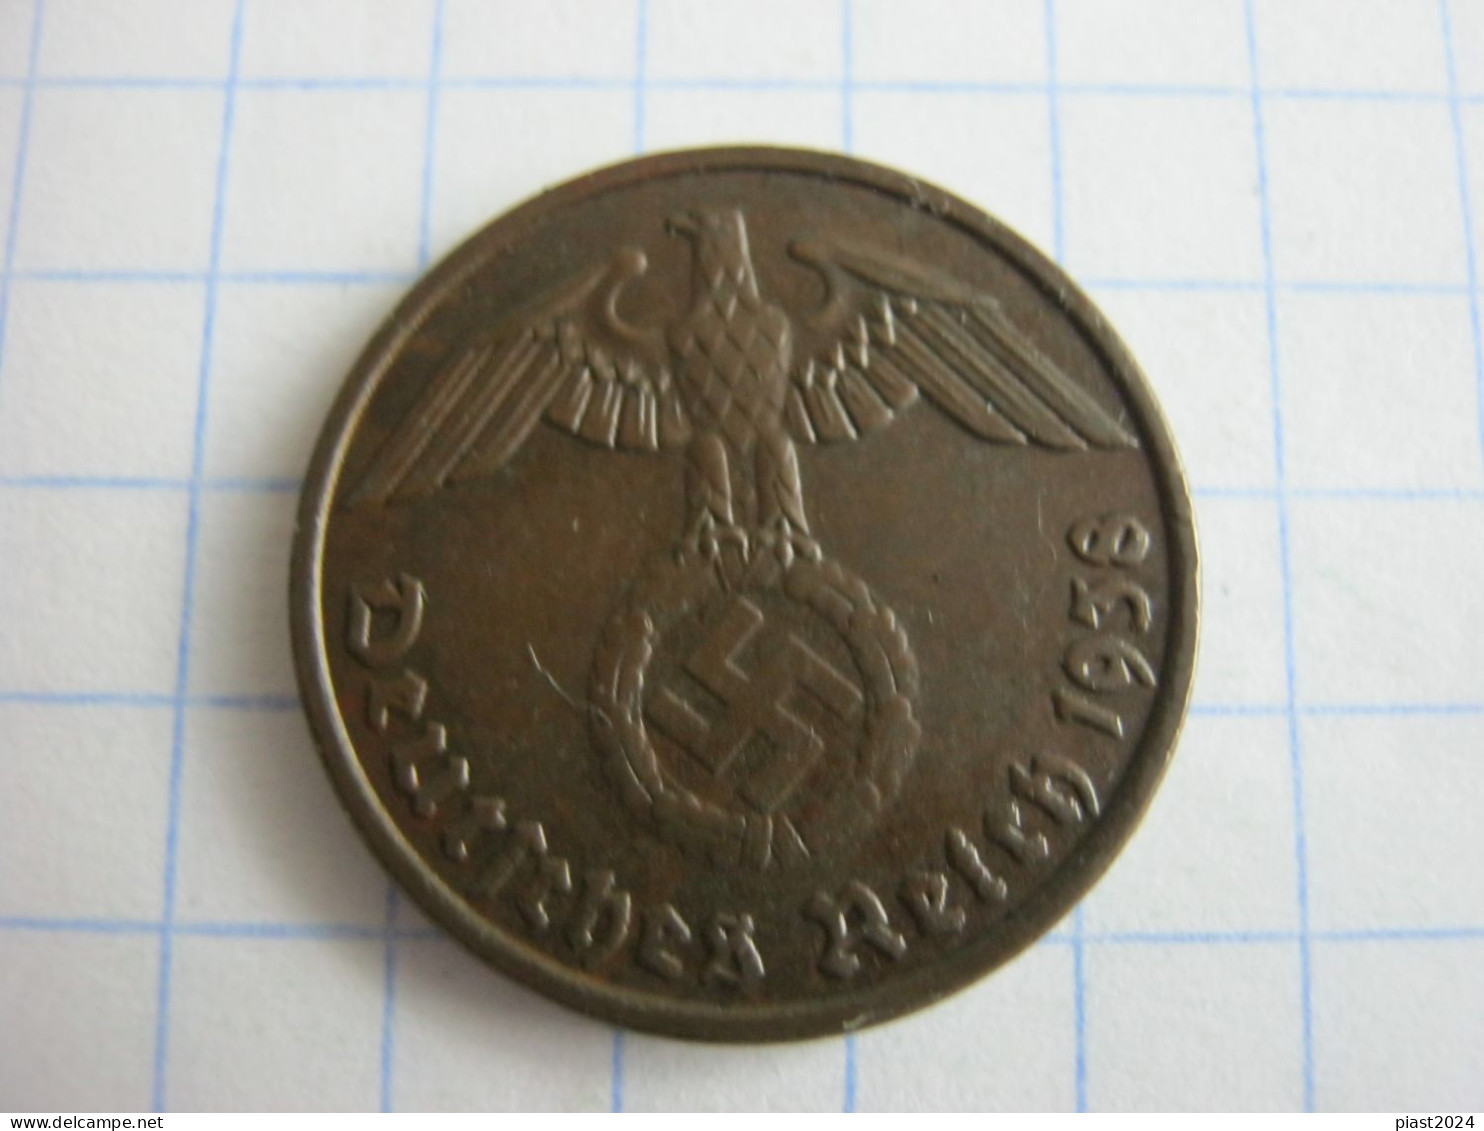 Germany 2 Reichspfennig 1938 D - 2 Reichspfennig